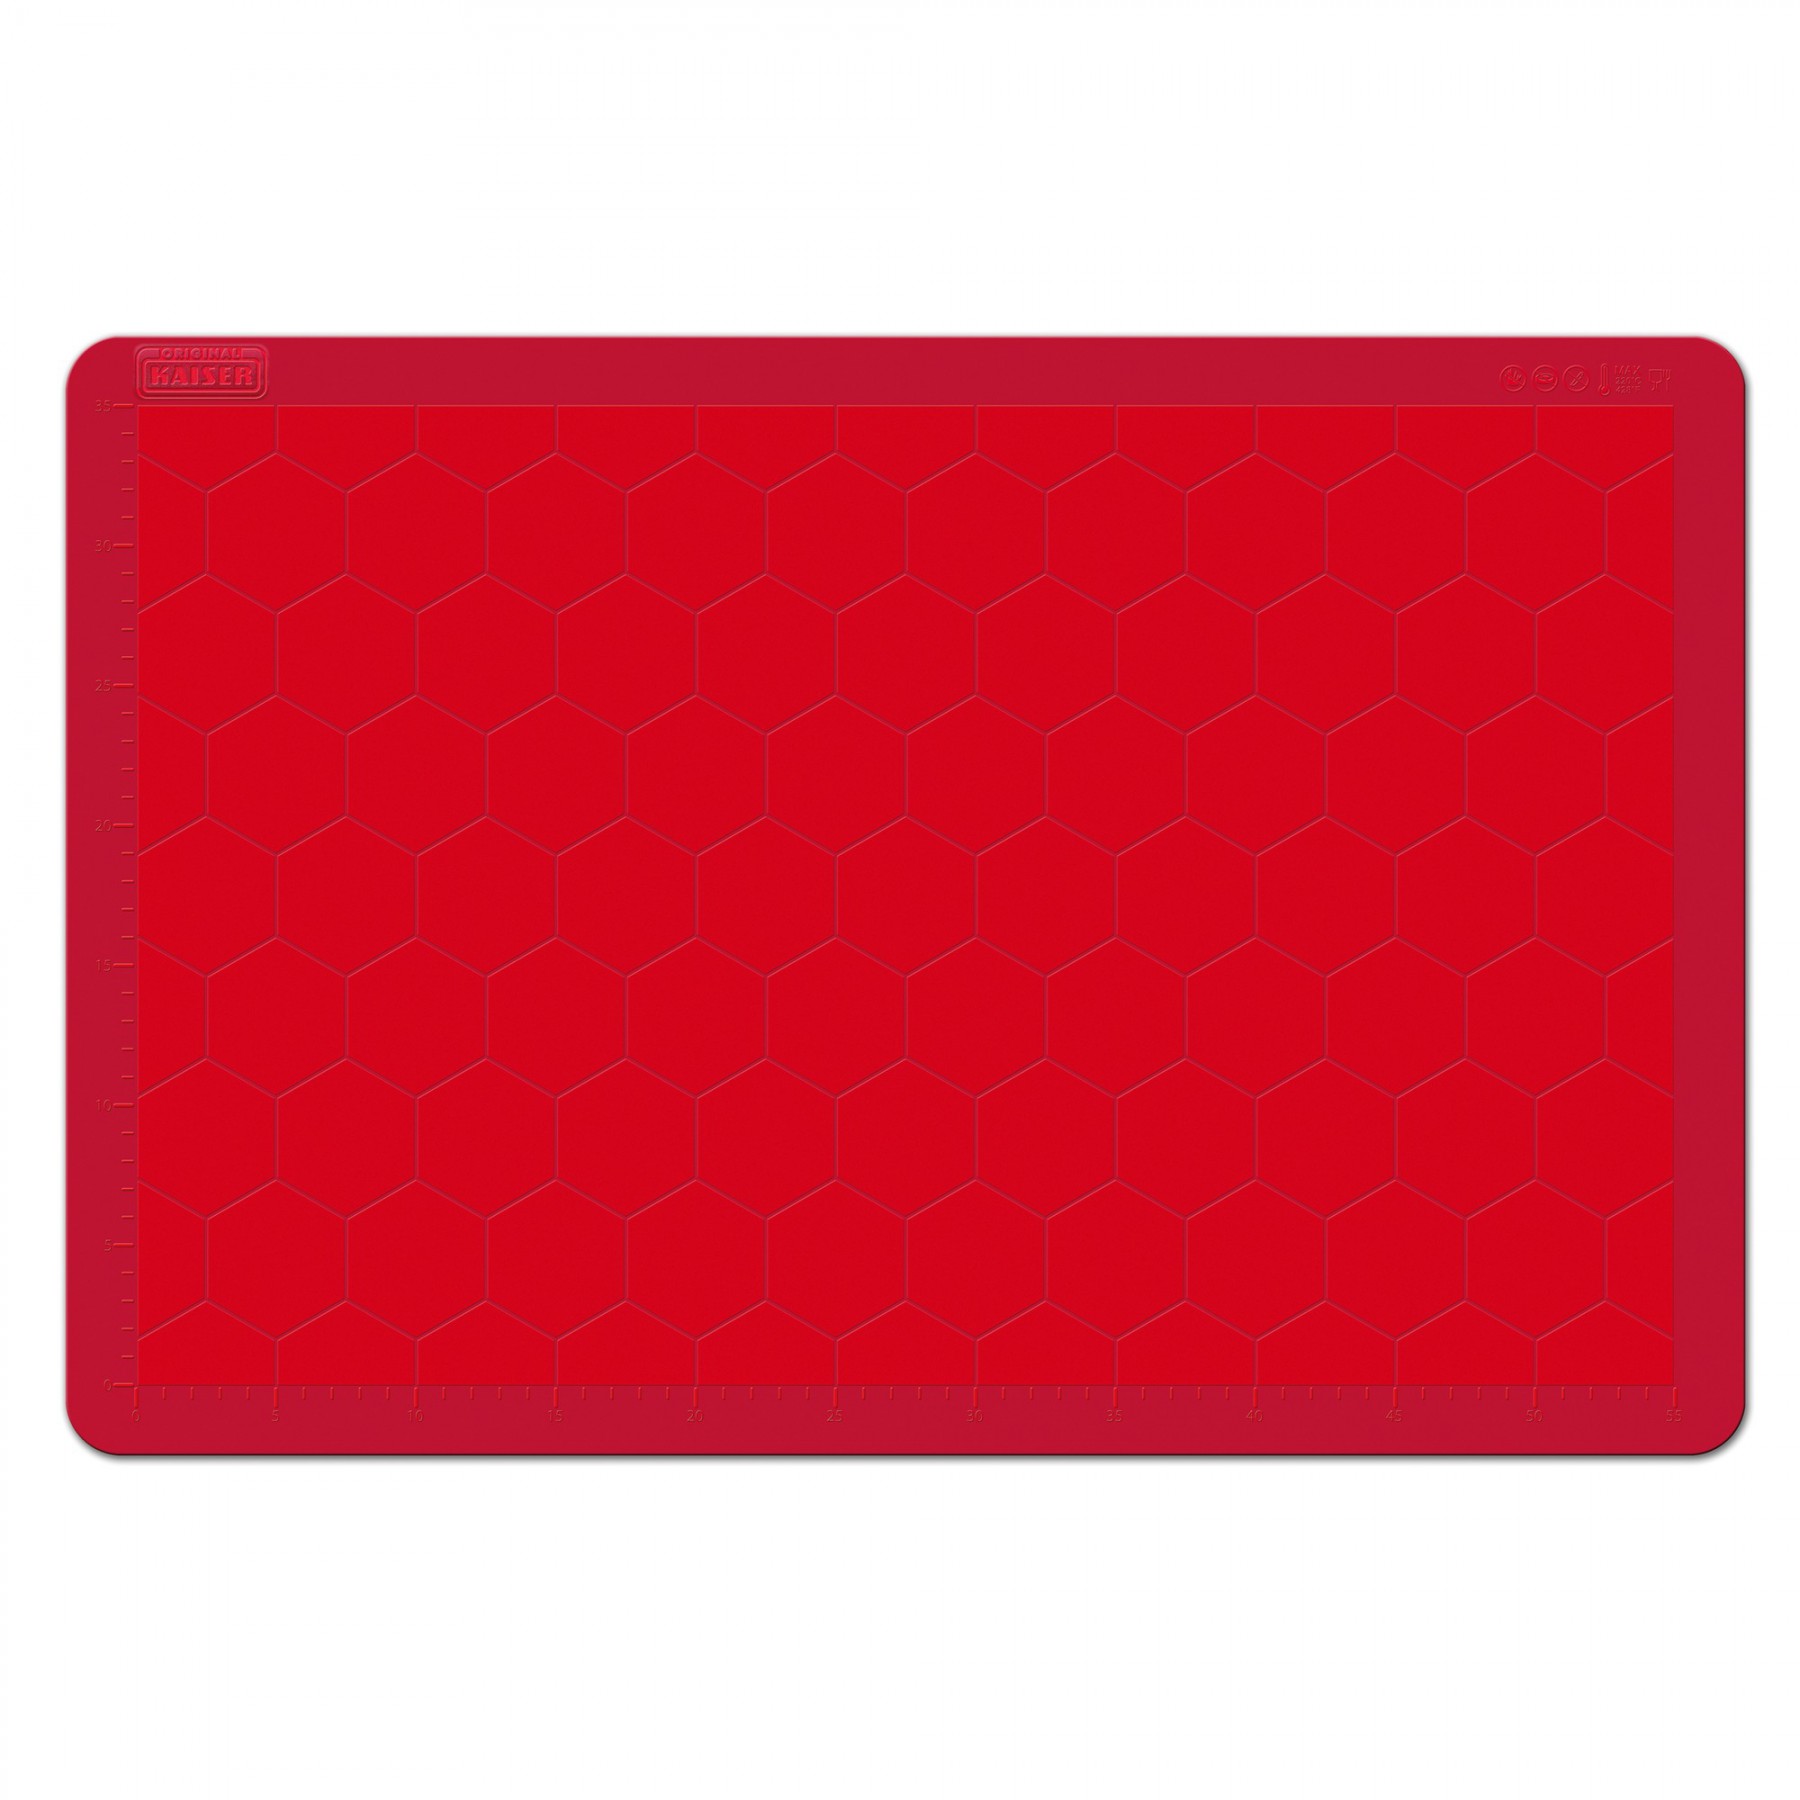 Kaiser Силиконовый коврик для выпечки красный 40 x 30 см | https://grandposuda.com.ua